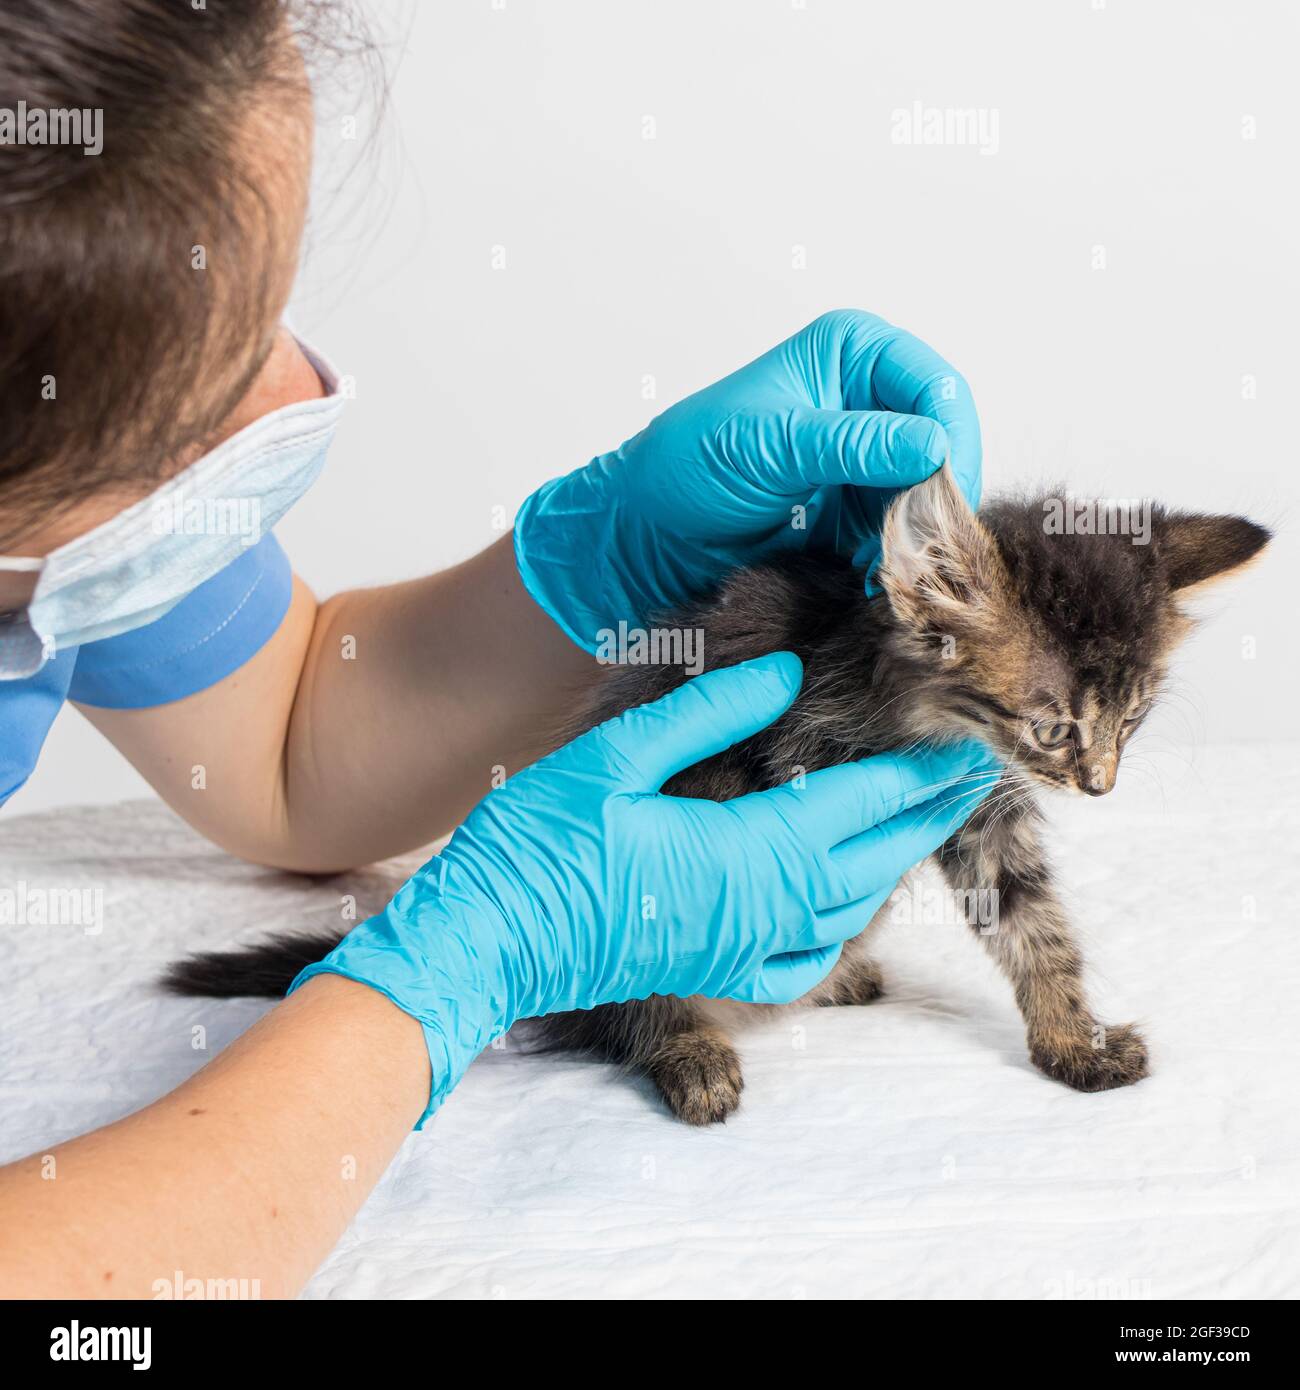 El veterinario examina el oído del gatito. Parásitos del oído, otitis, enfermedades en animales y gatos. Foto de stock